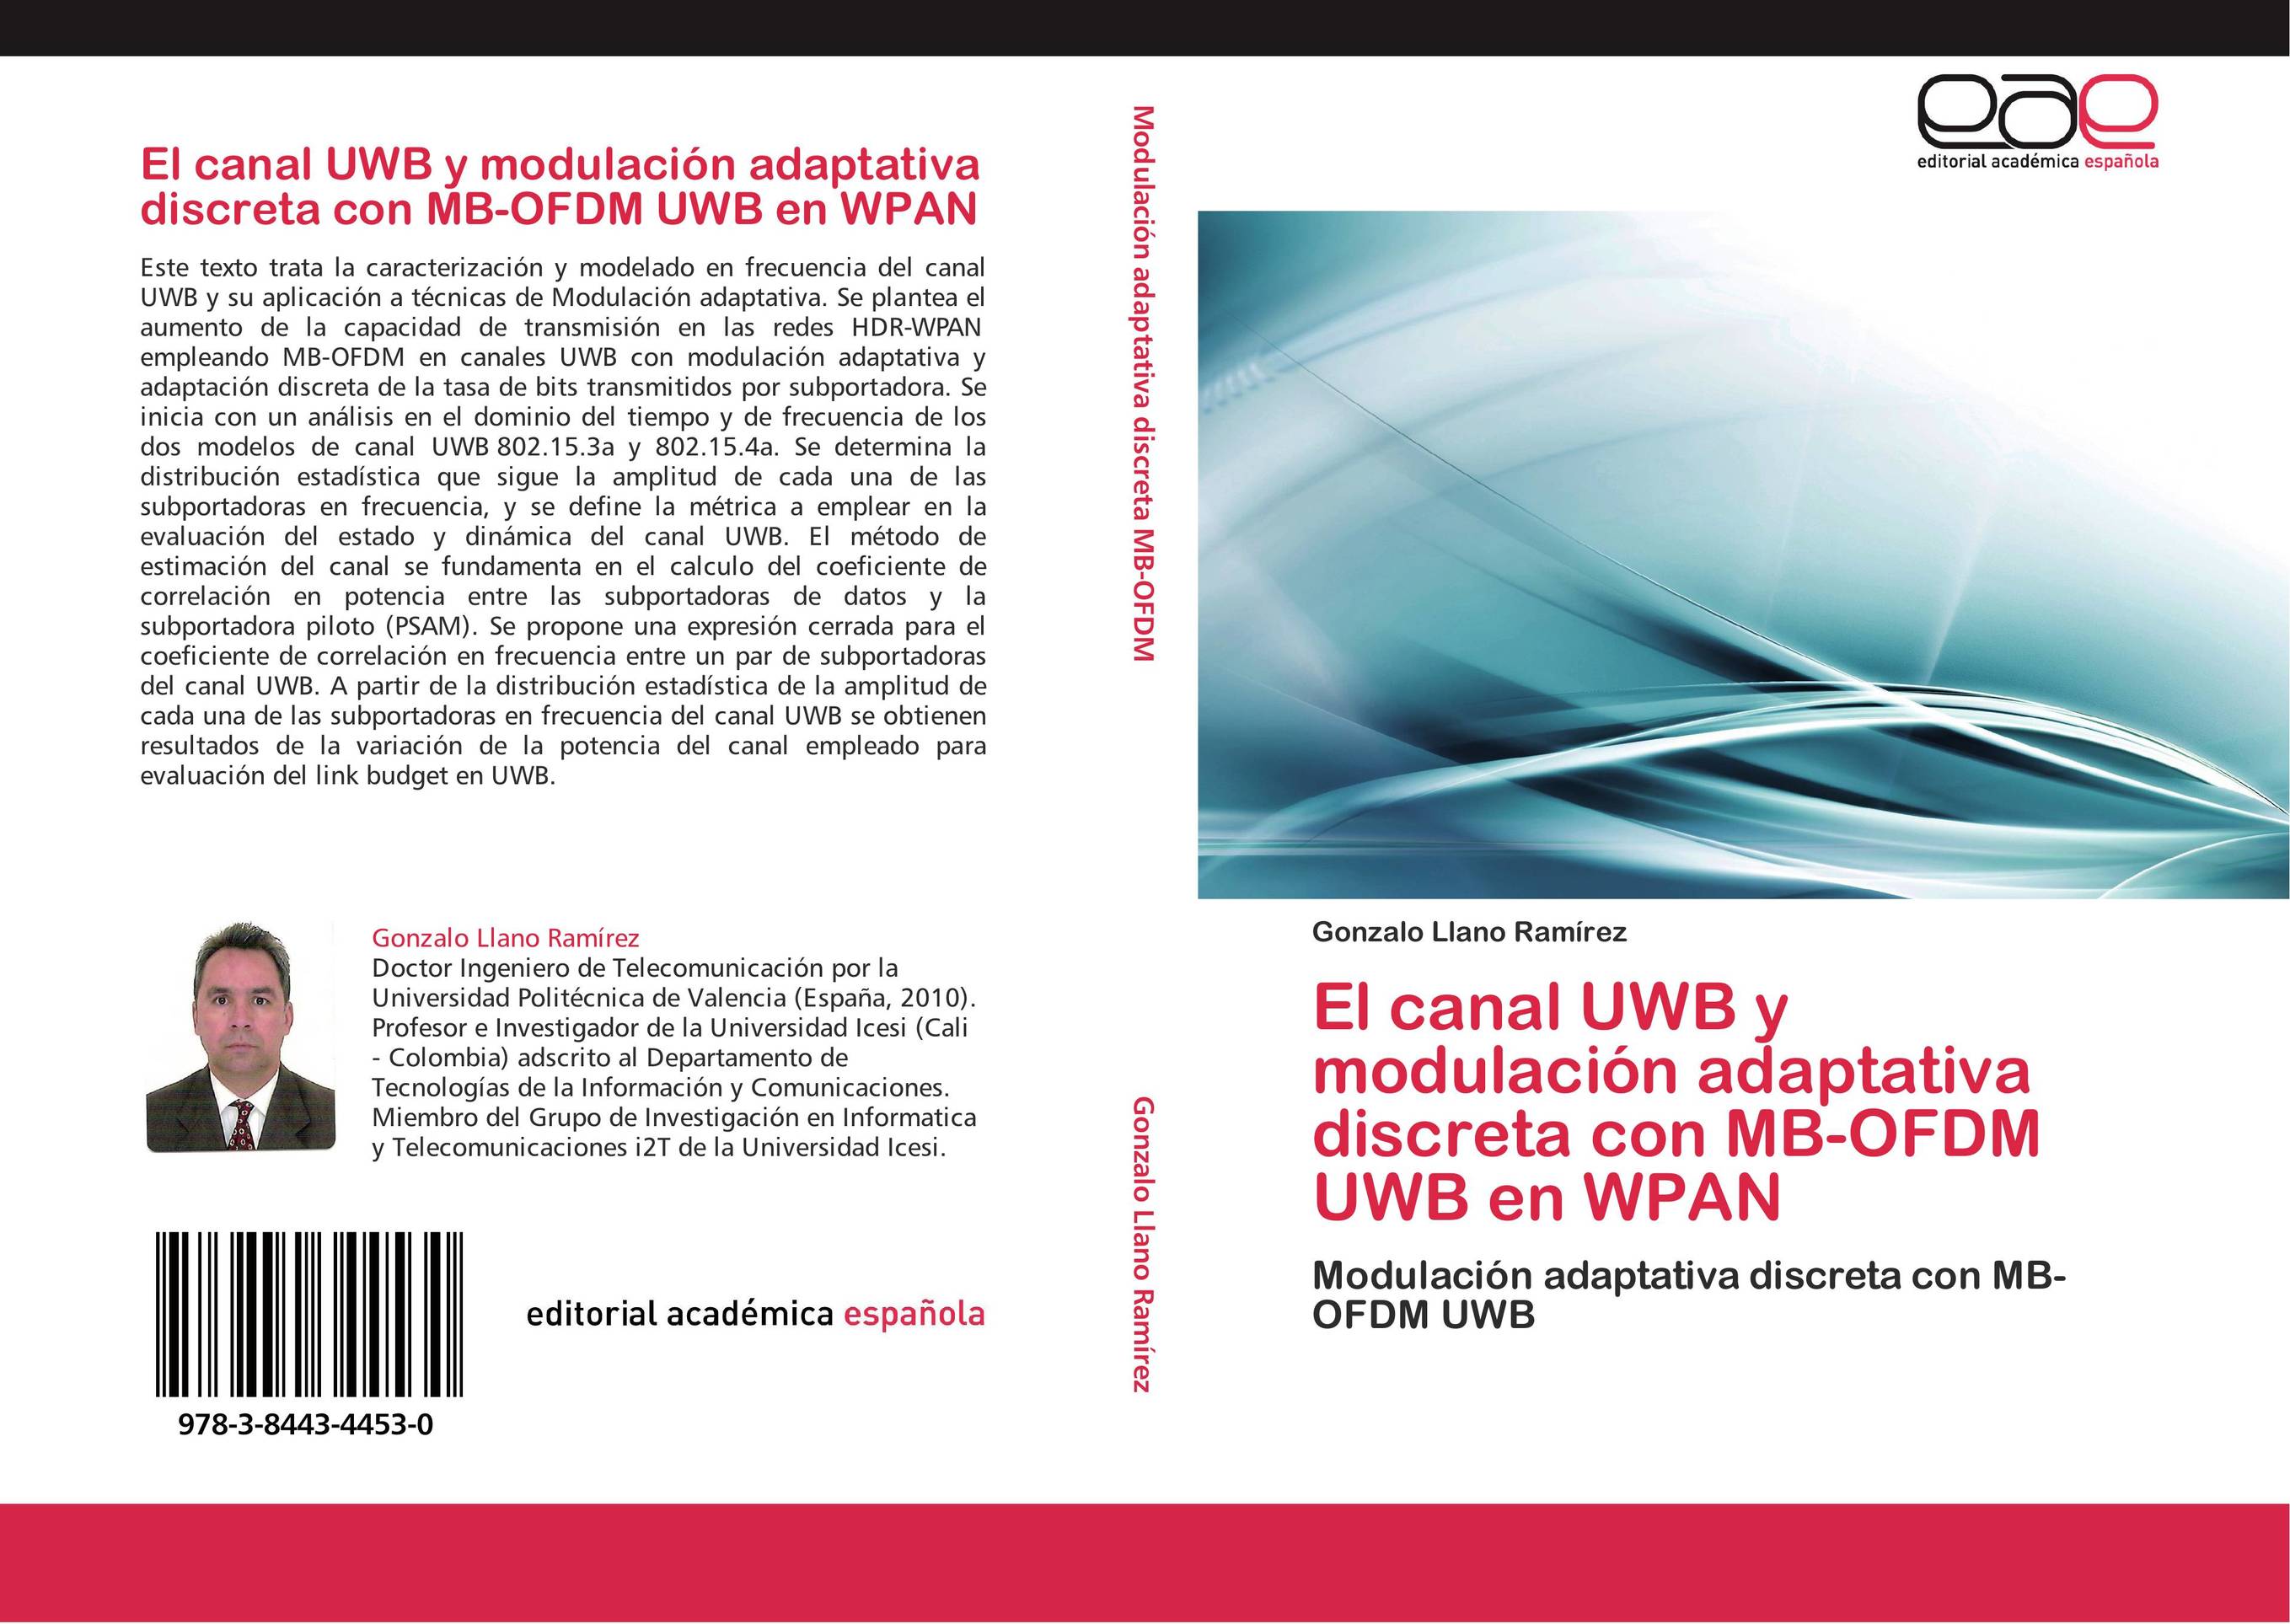 El canal UWB y modulación adaptativa discreta con MB-OFDM UWB en WPAN